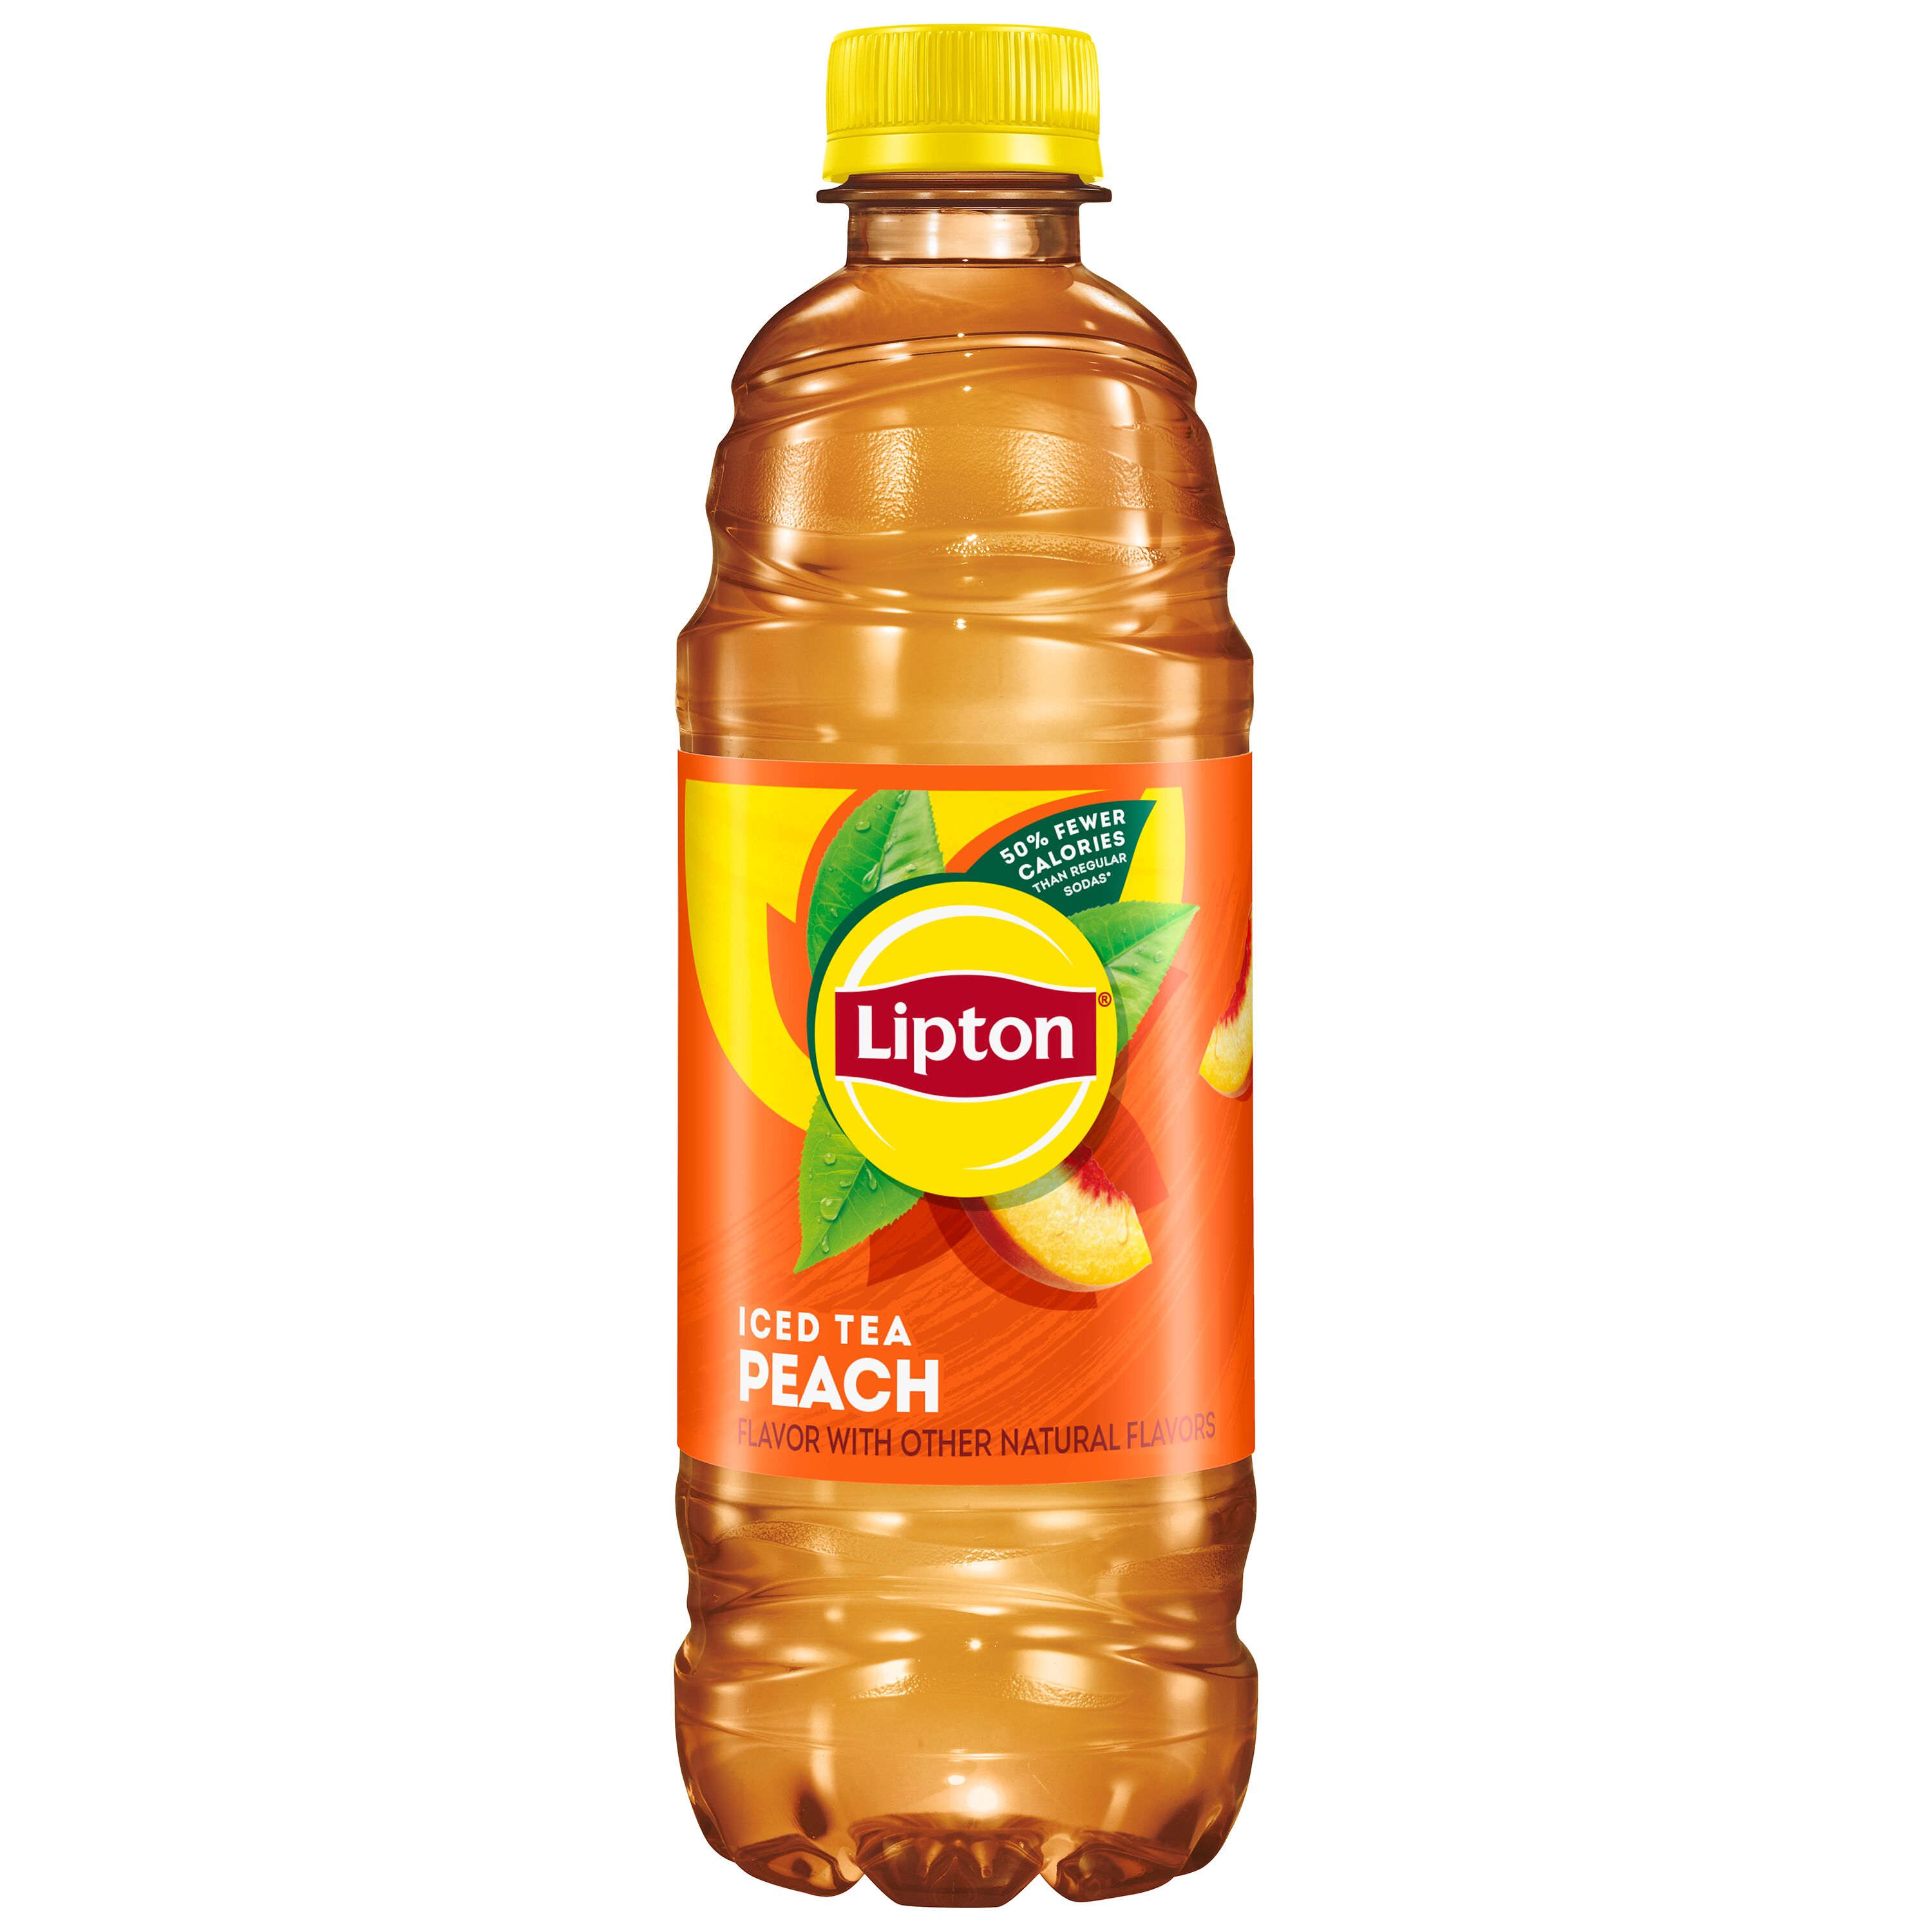 Lipton Peach Iced Tea, Bottled Tea Drink, 16.9 fl oz, 12 Pack Bottles - image 4 of 6